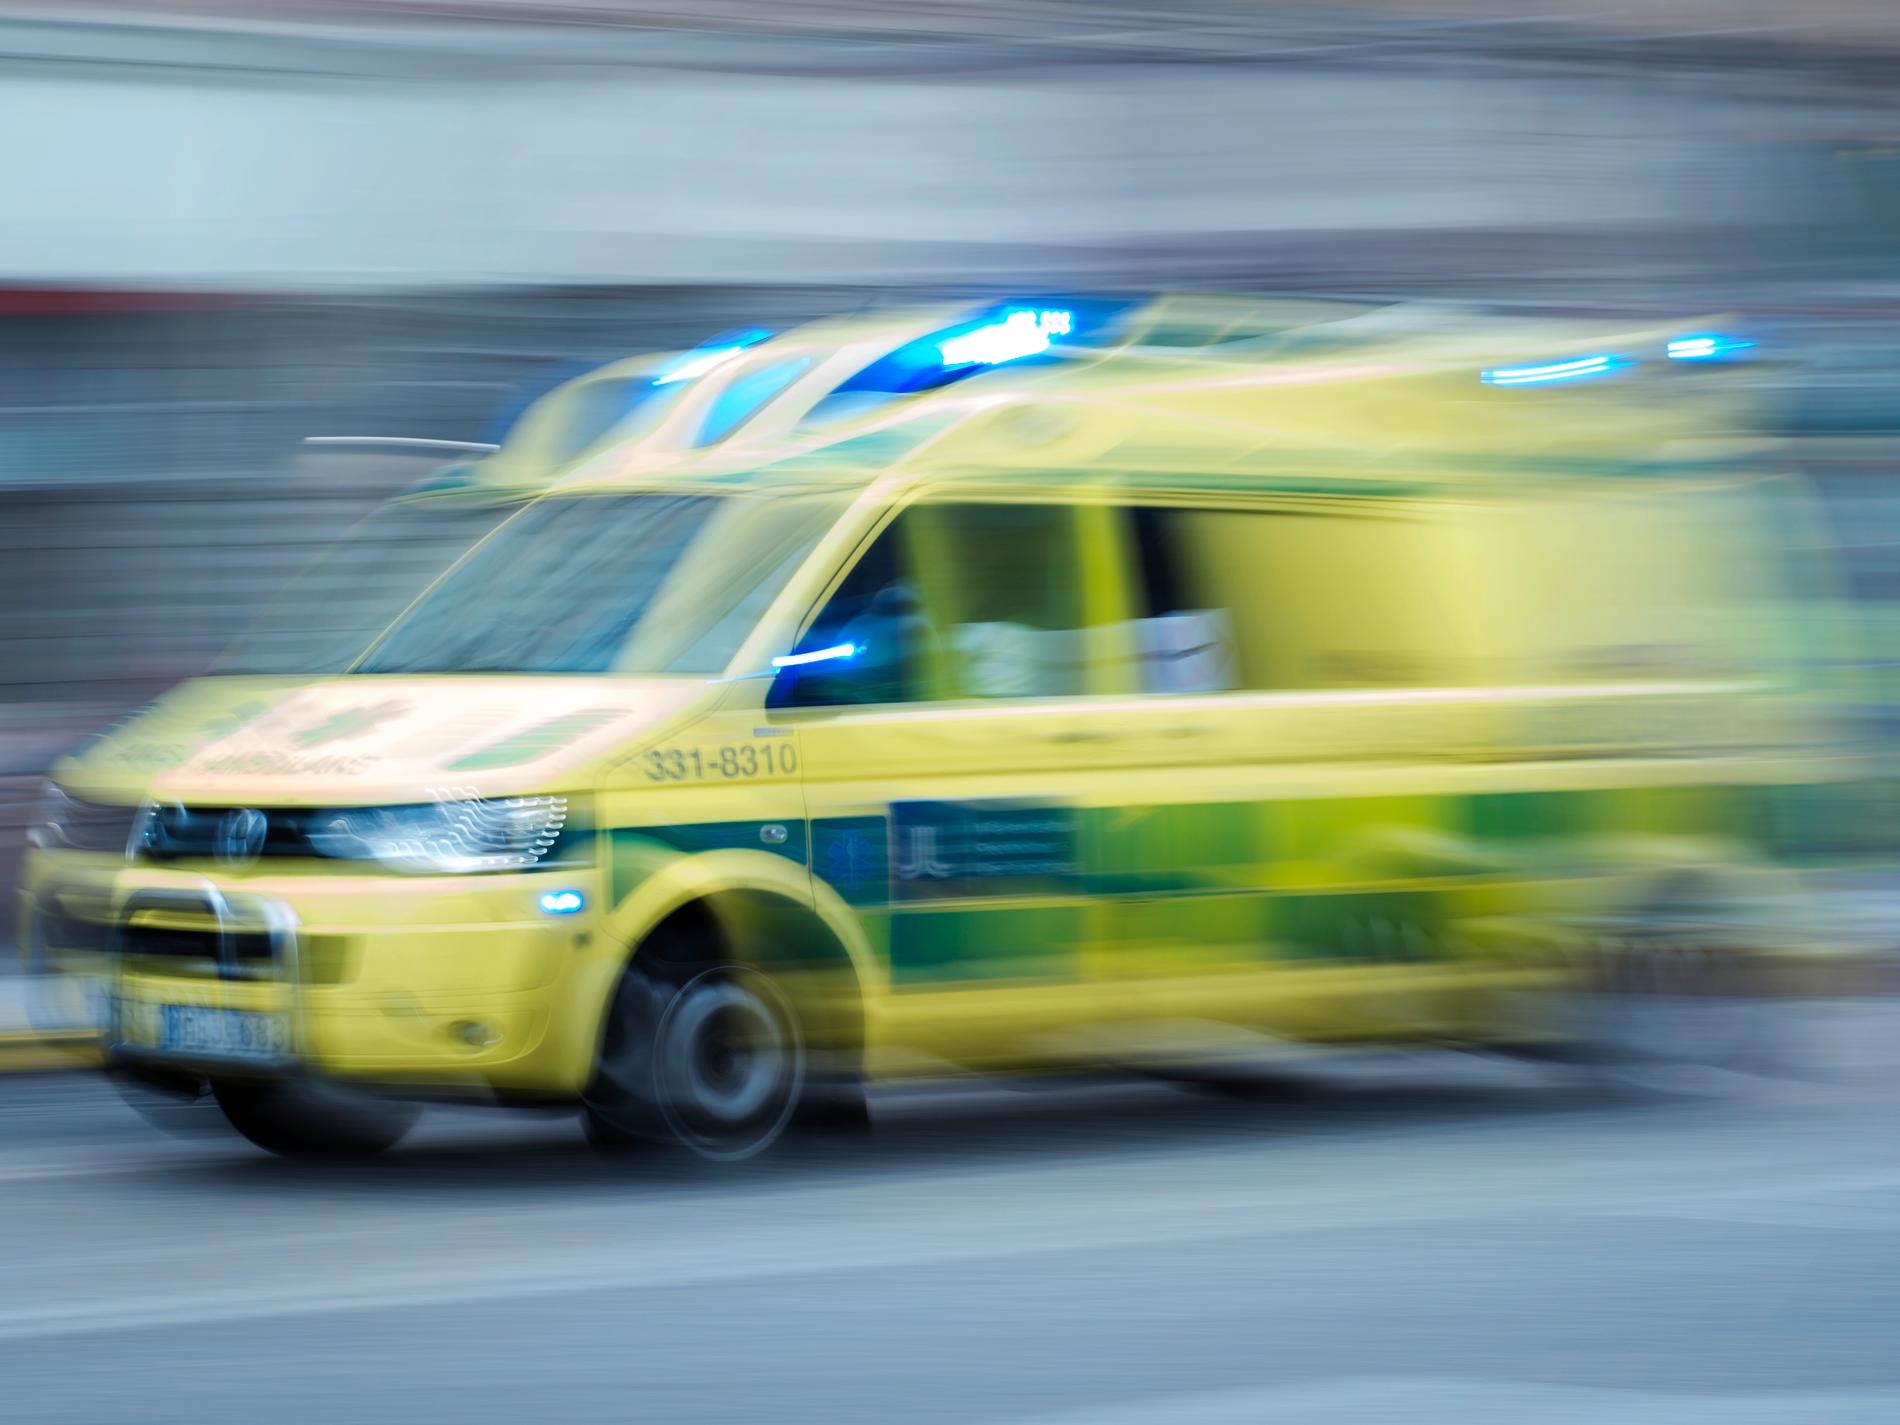 Olycka bakom sjuårings död i Oxelösund